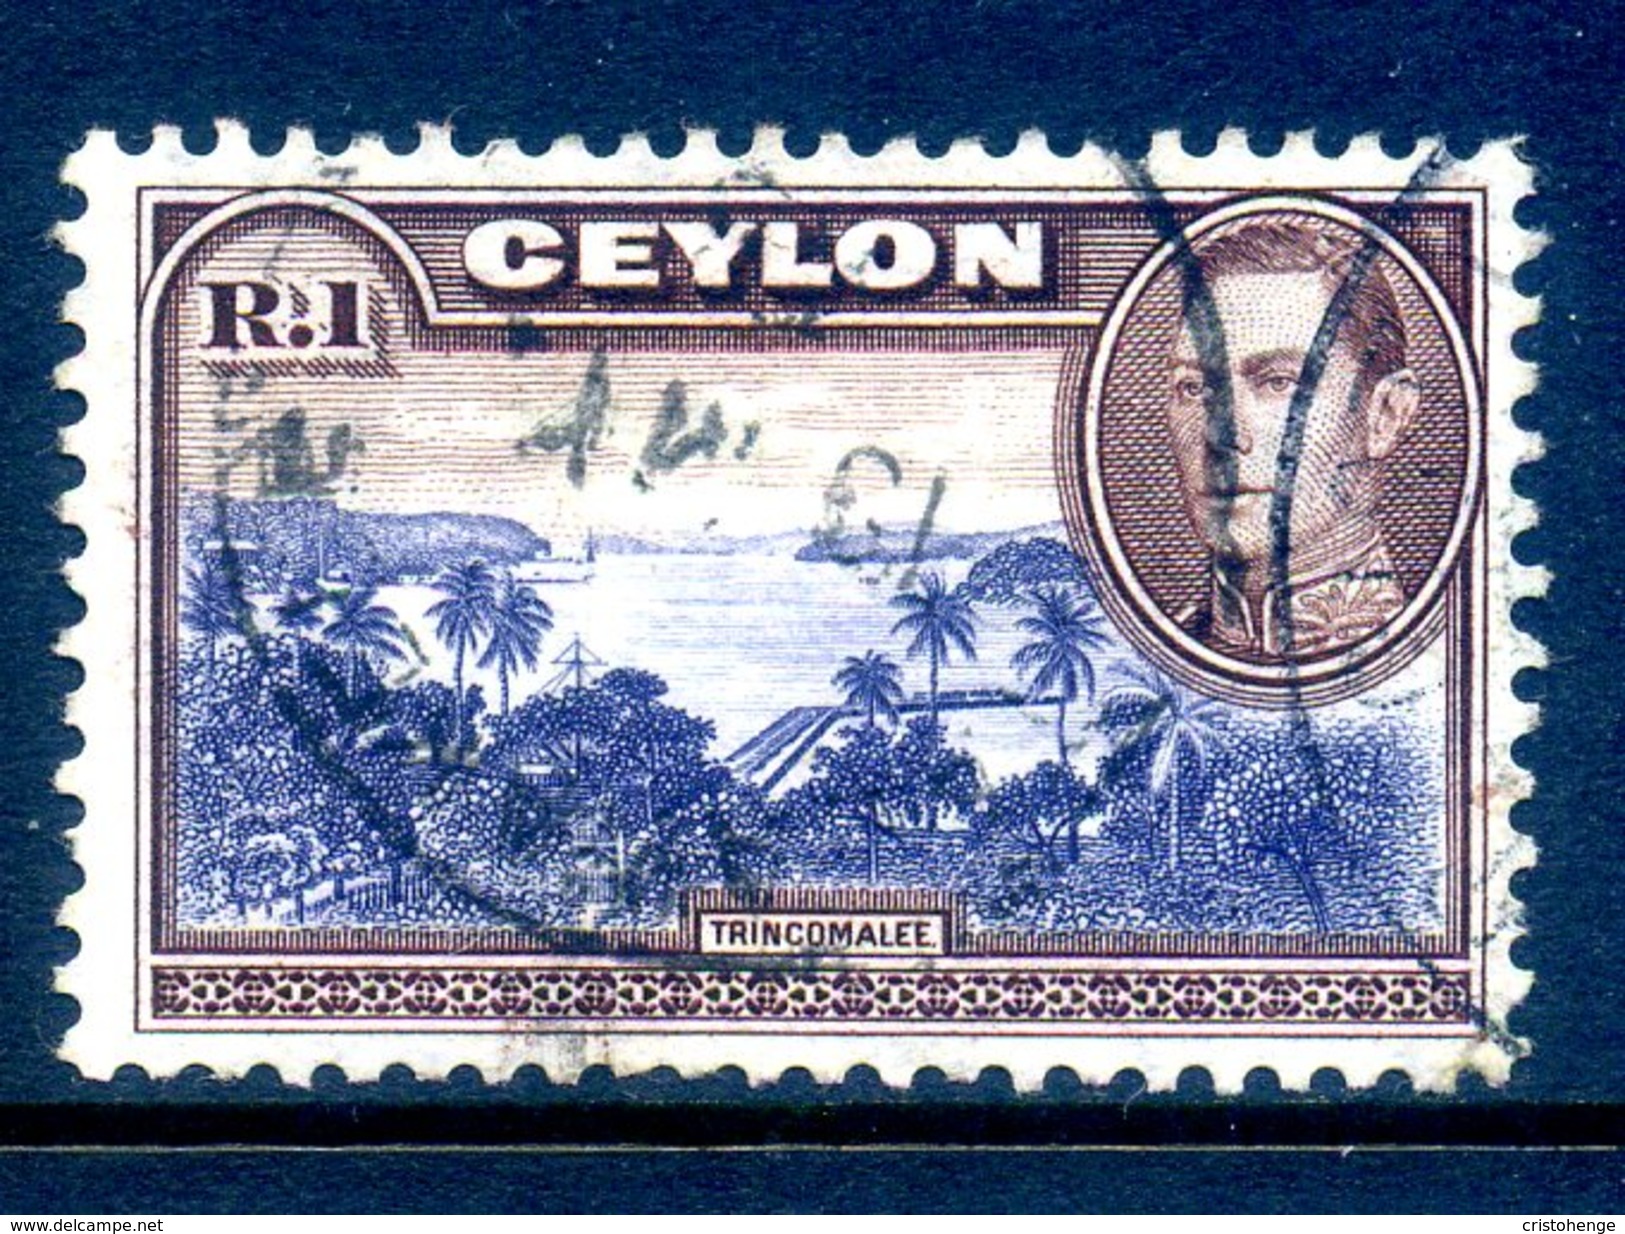 Ceylon 1938-49 KGVI Pictorials - 1r Trincomalee Used (SG 395) - Ceylon (...-1947)